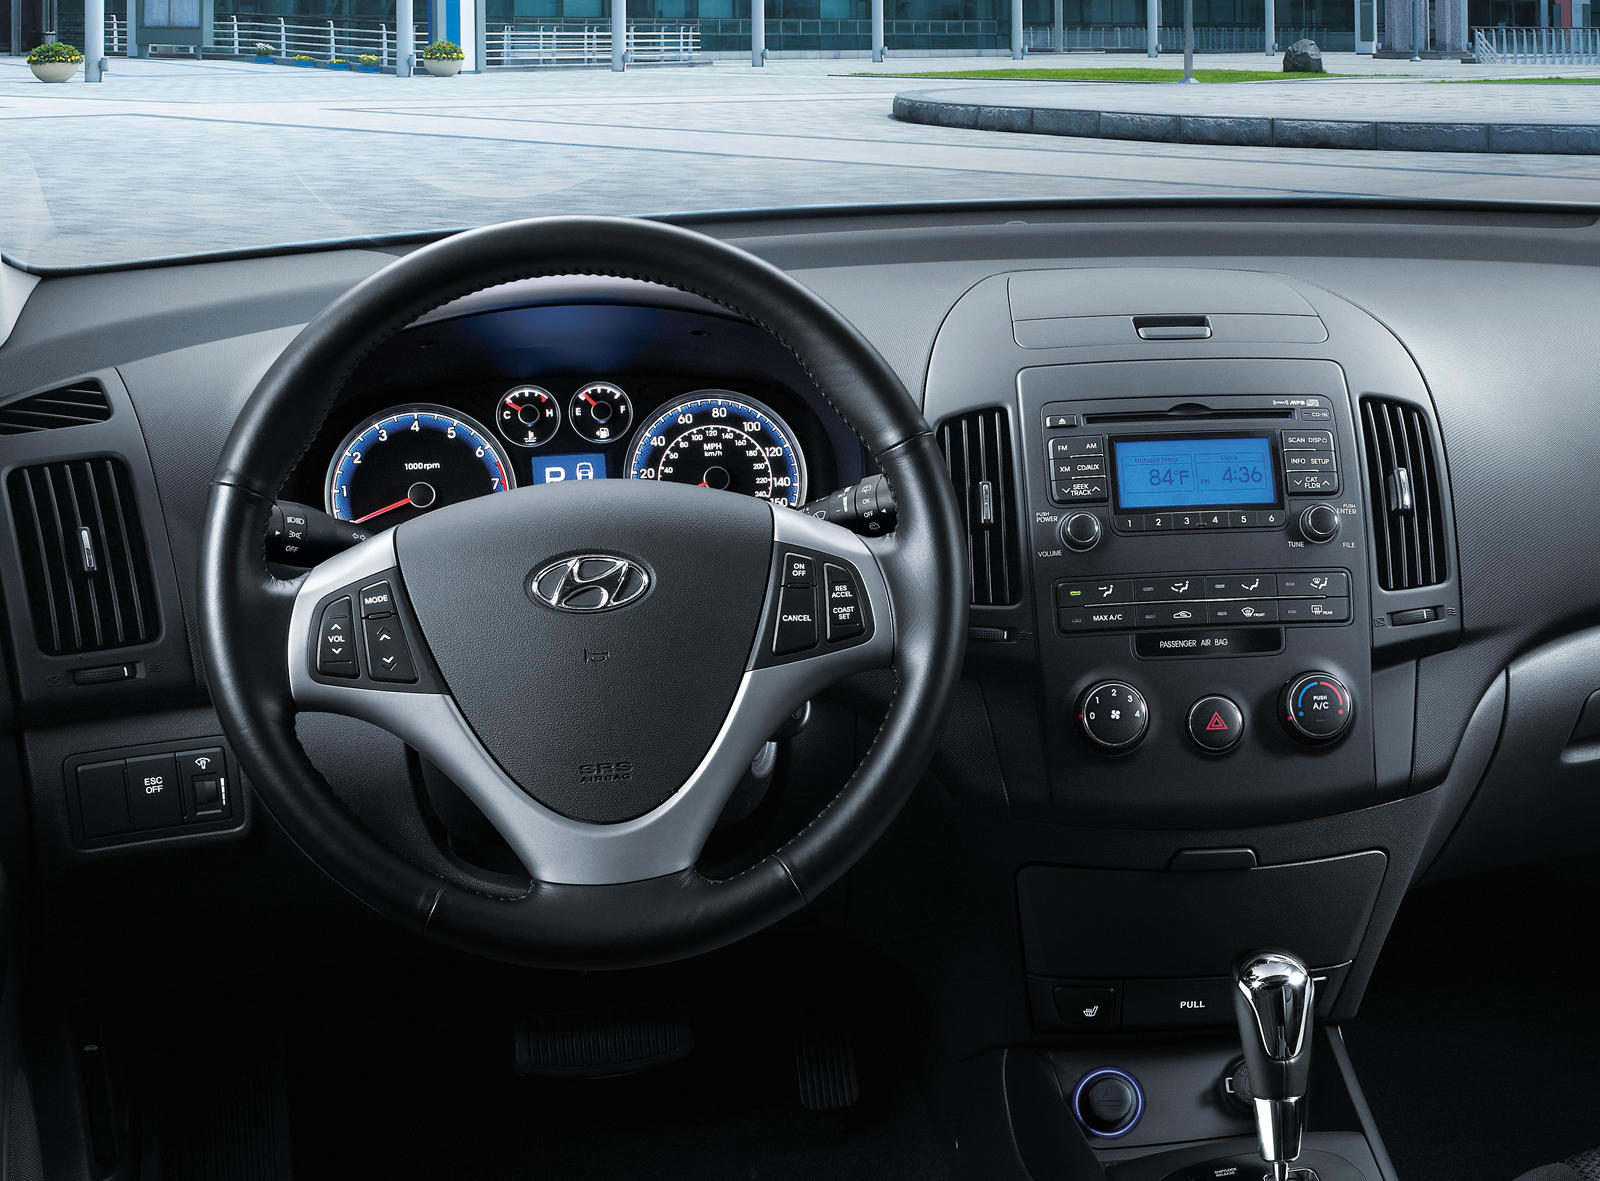 2011 Hyundai Elantra Touring Interior Photos | CarBuzz